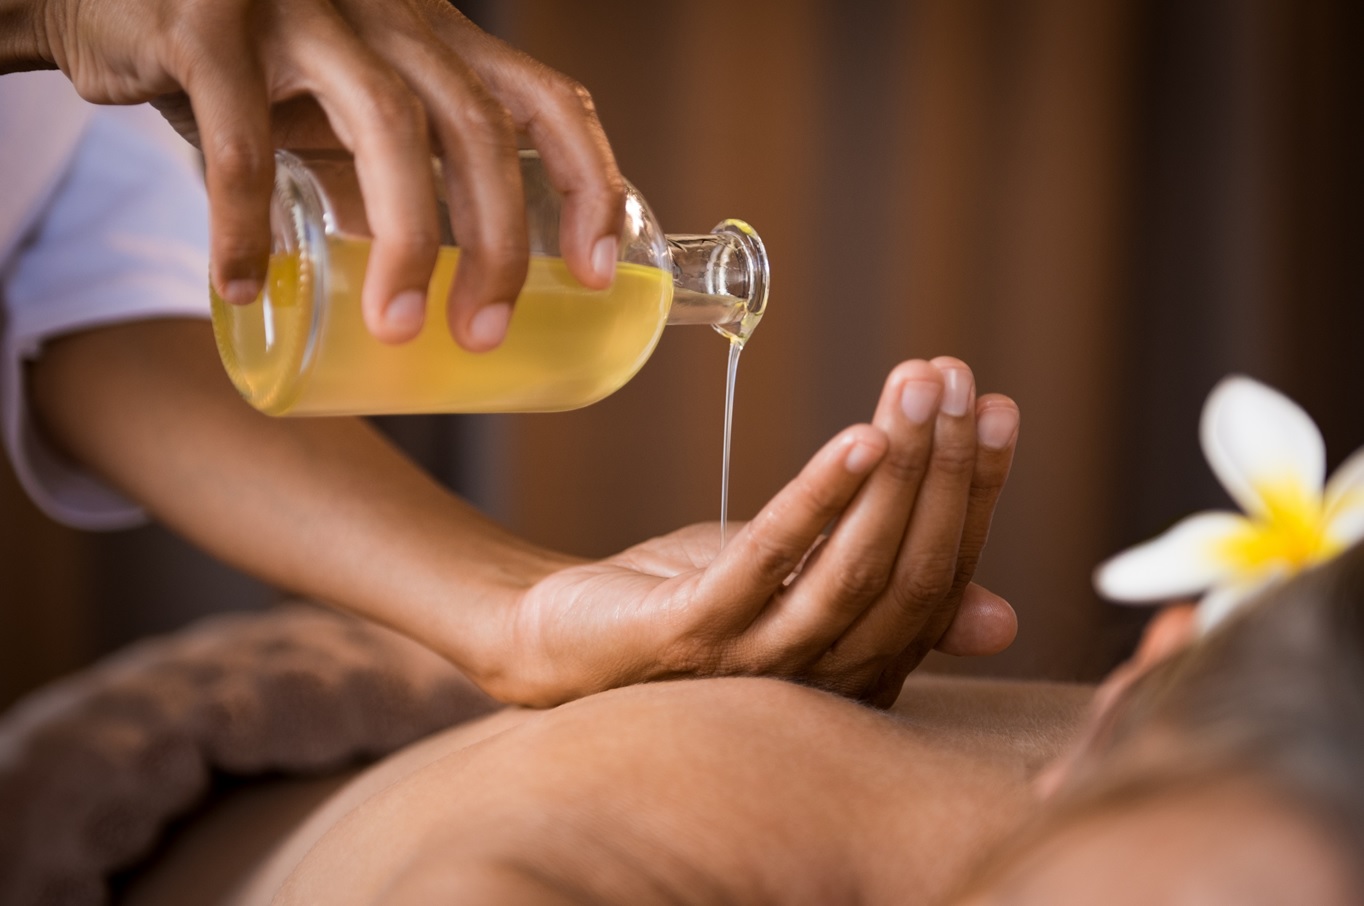 Entenda como ocorre a massagem relaxante